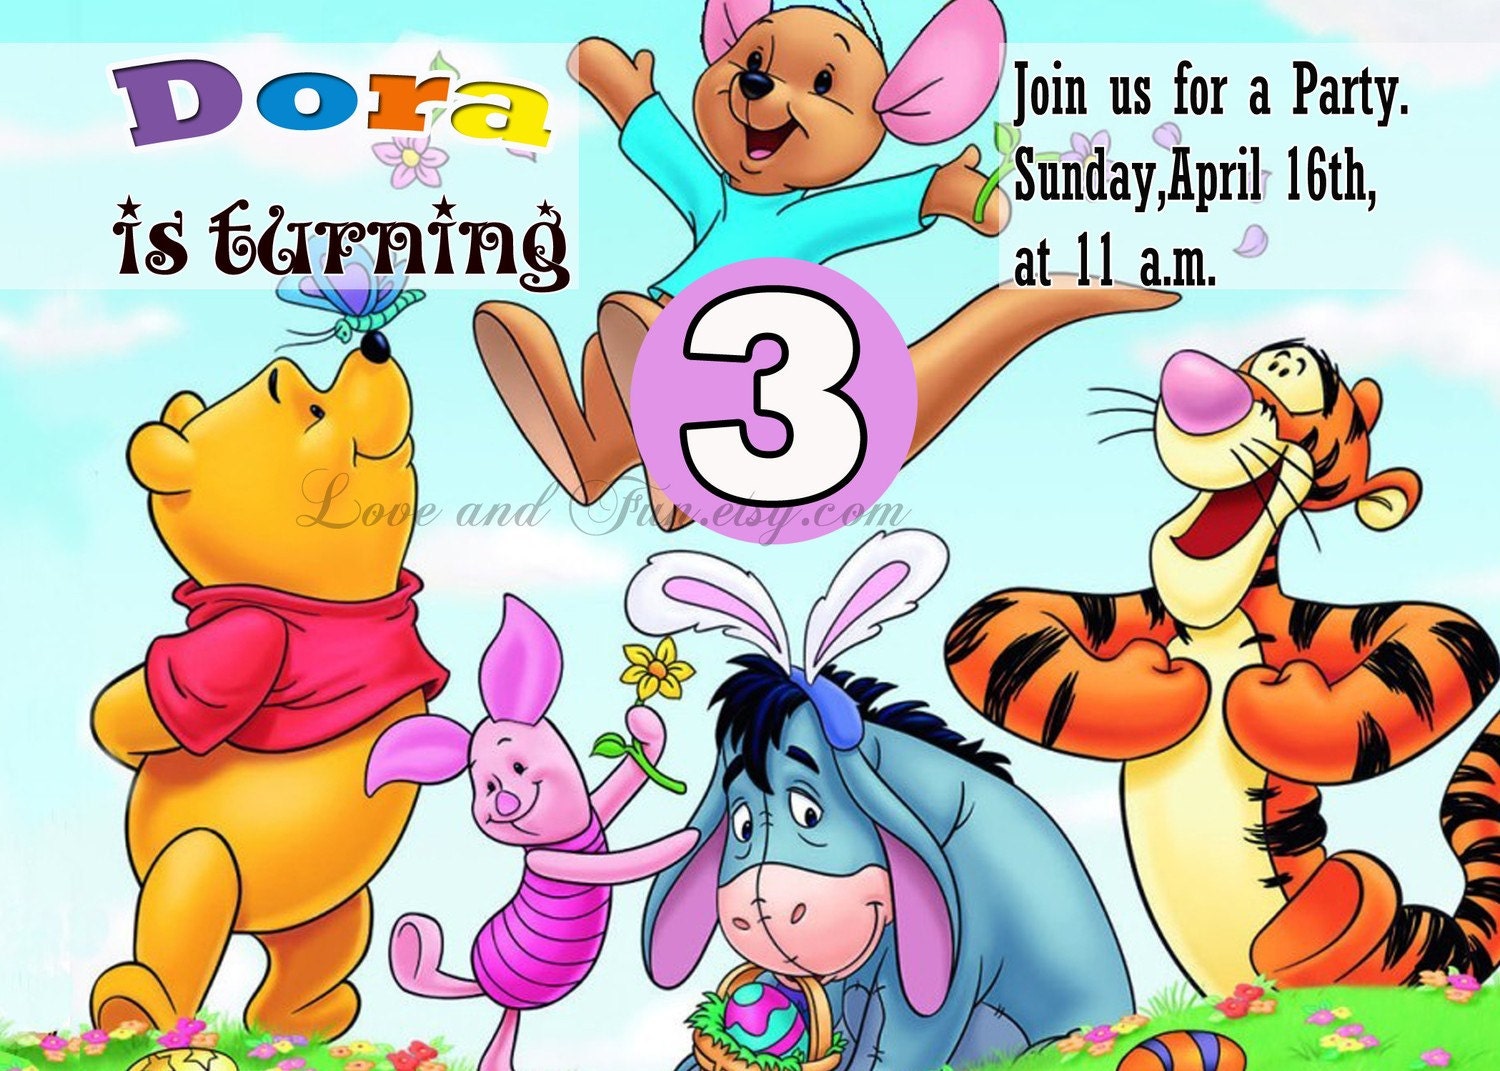 Free Pooh Bear Invitation Templates